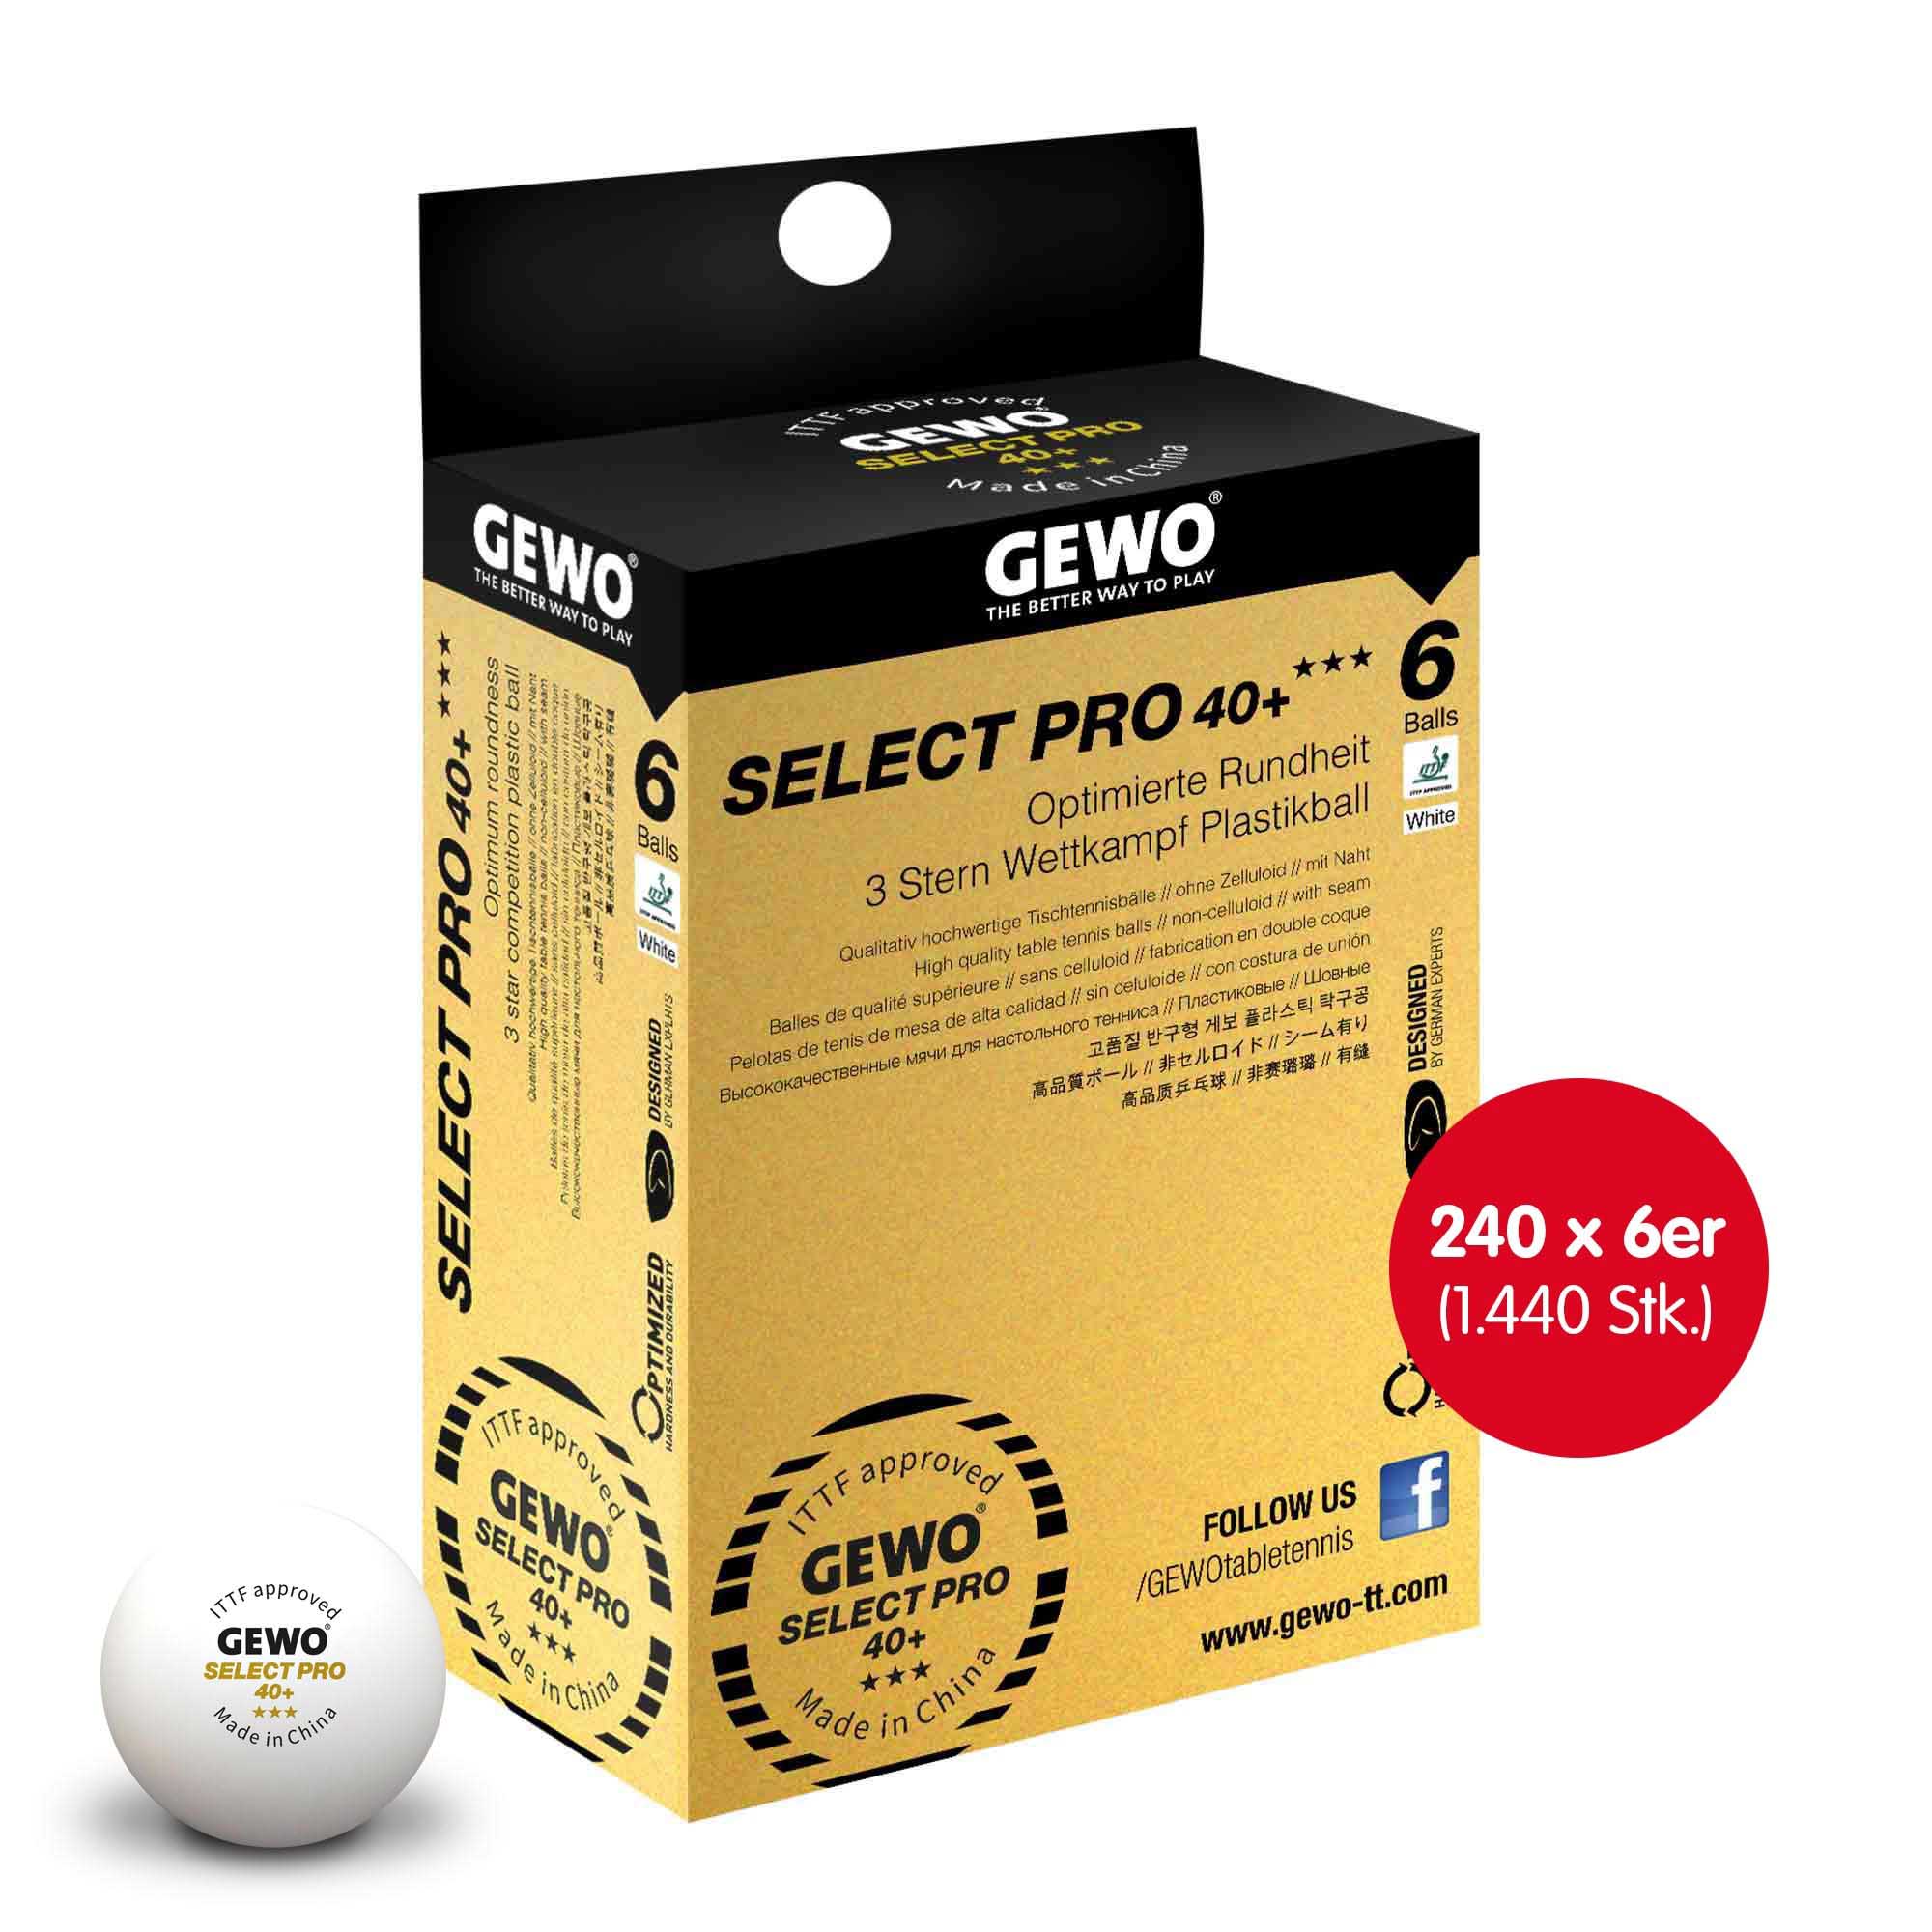 Gewo Select Pro 40+ *** 240x 6er Box white